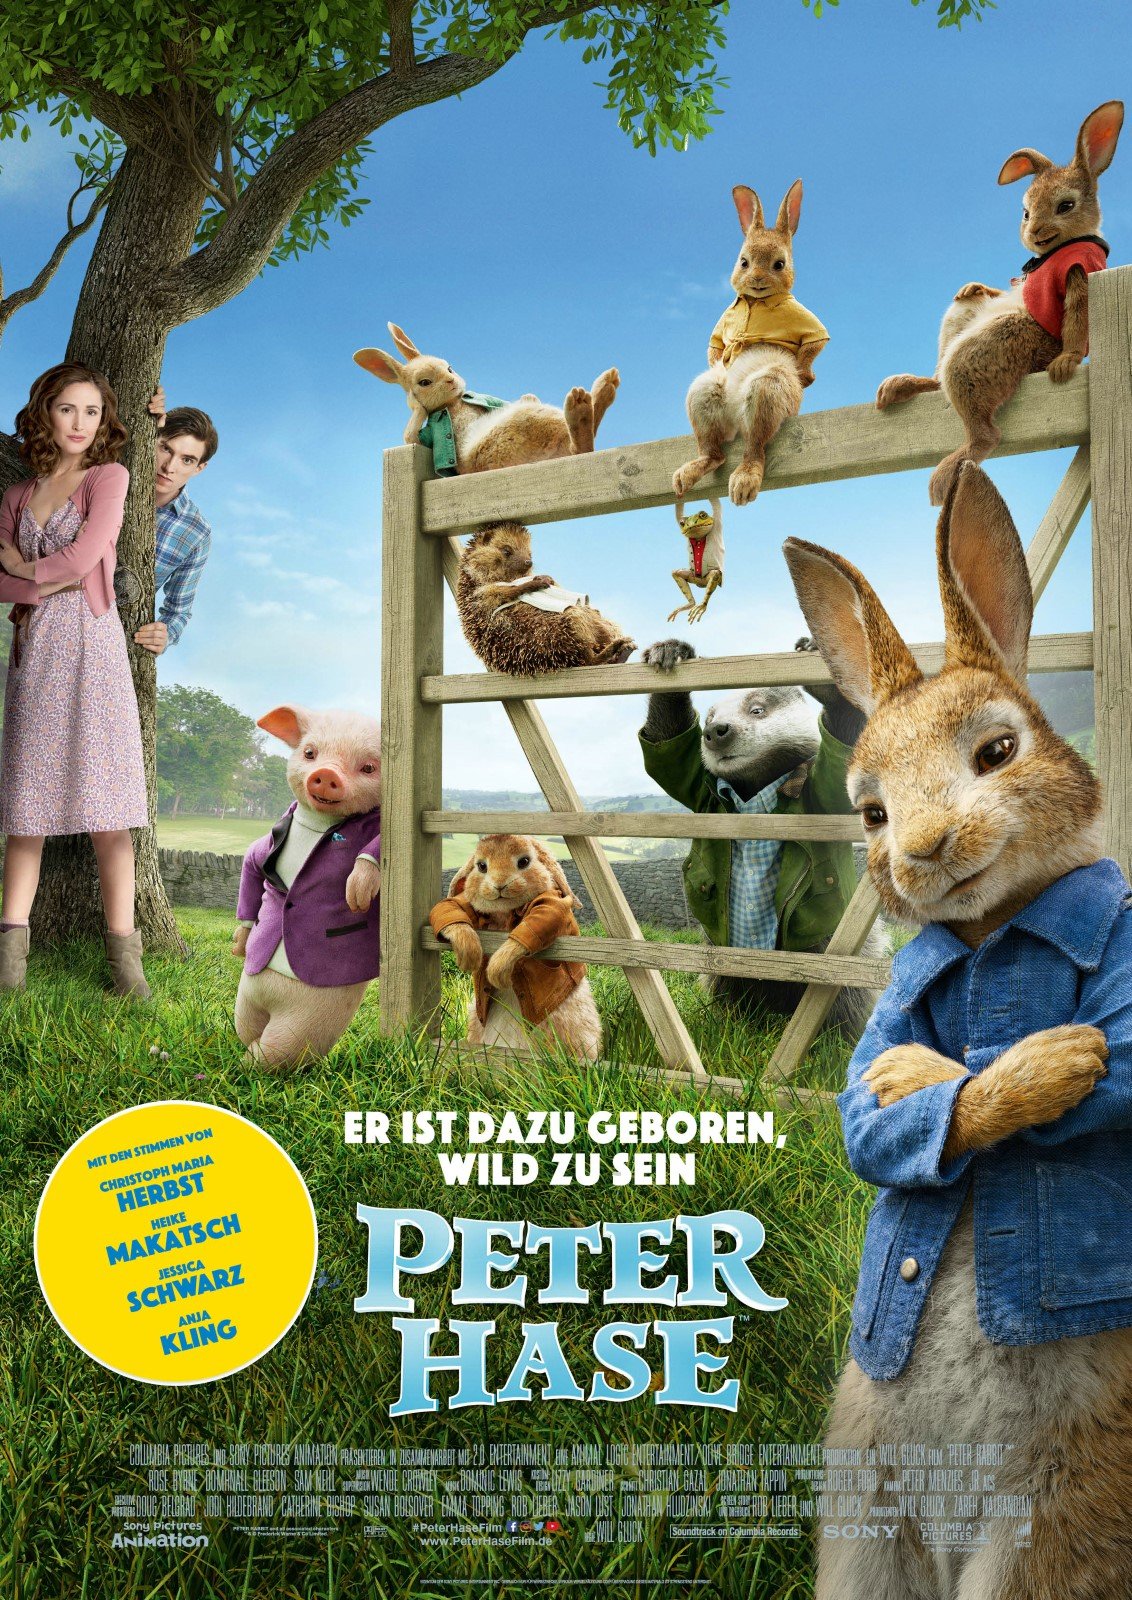 Wer streamt Peter Hase / Peter Rabbit? openload kkiste kinox